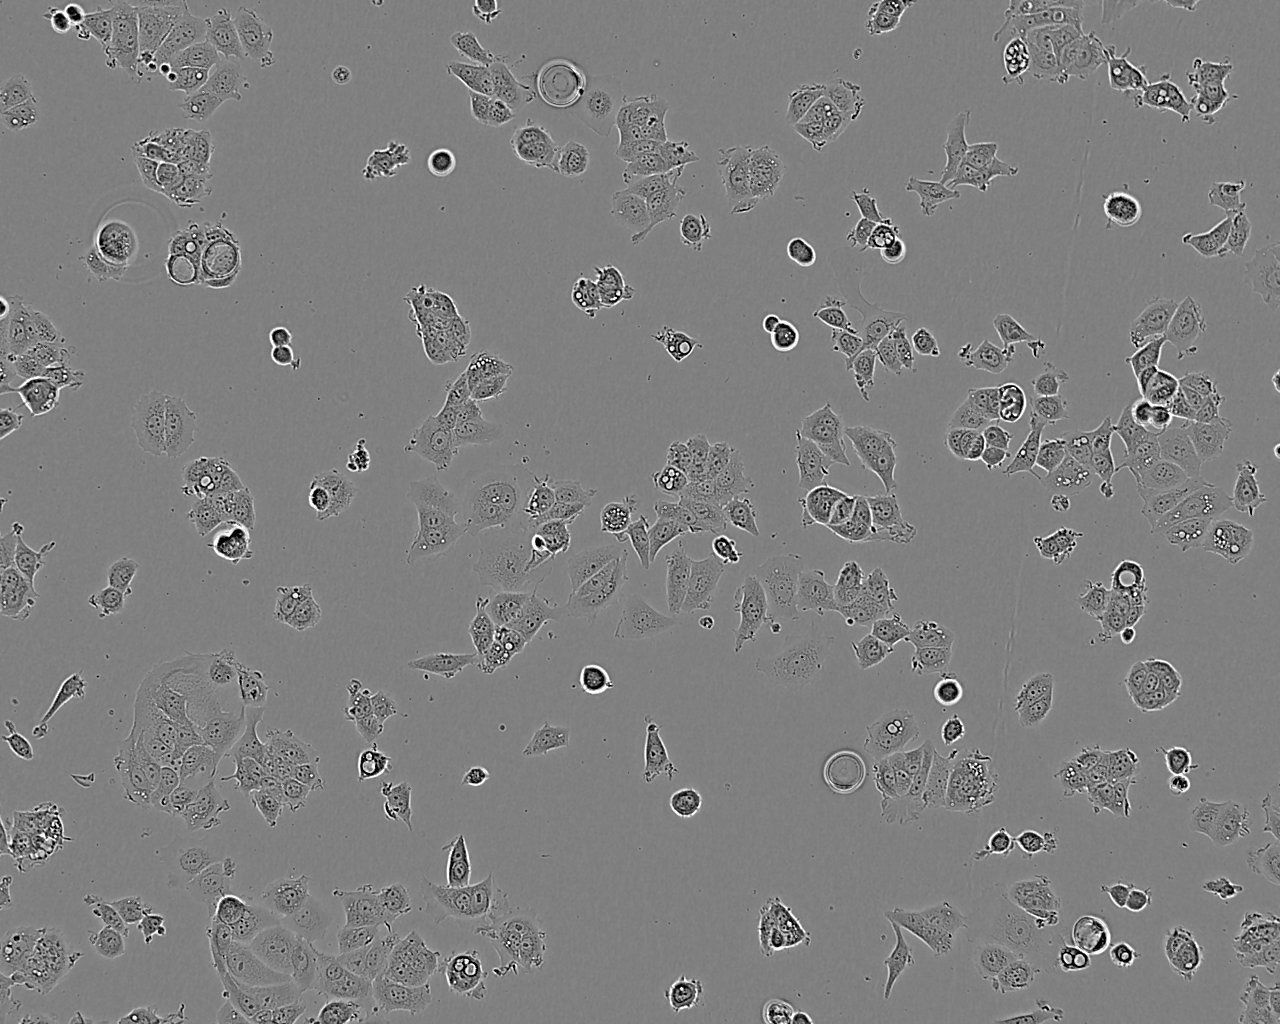 MIHA epithelioid cells正常人肝细胞系,MIHA epithelioid cells